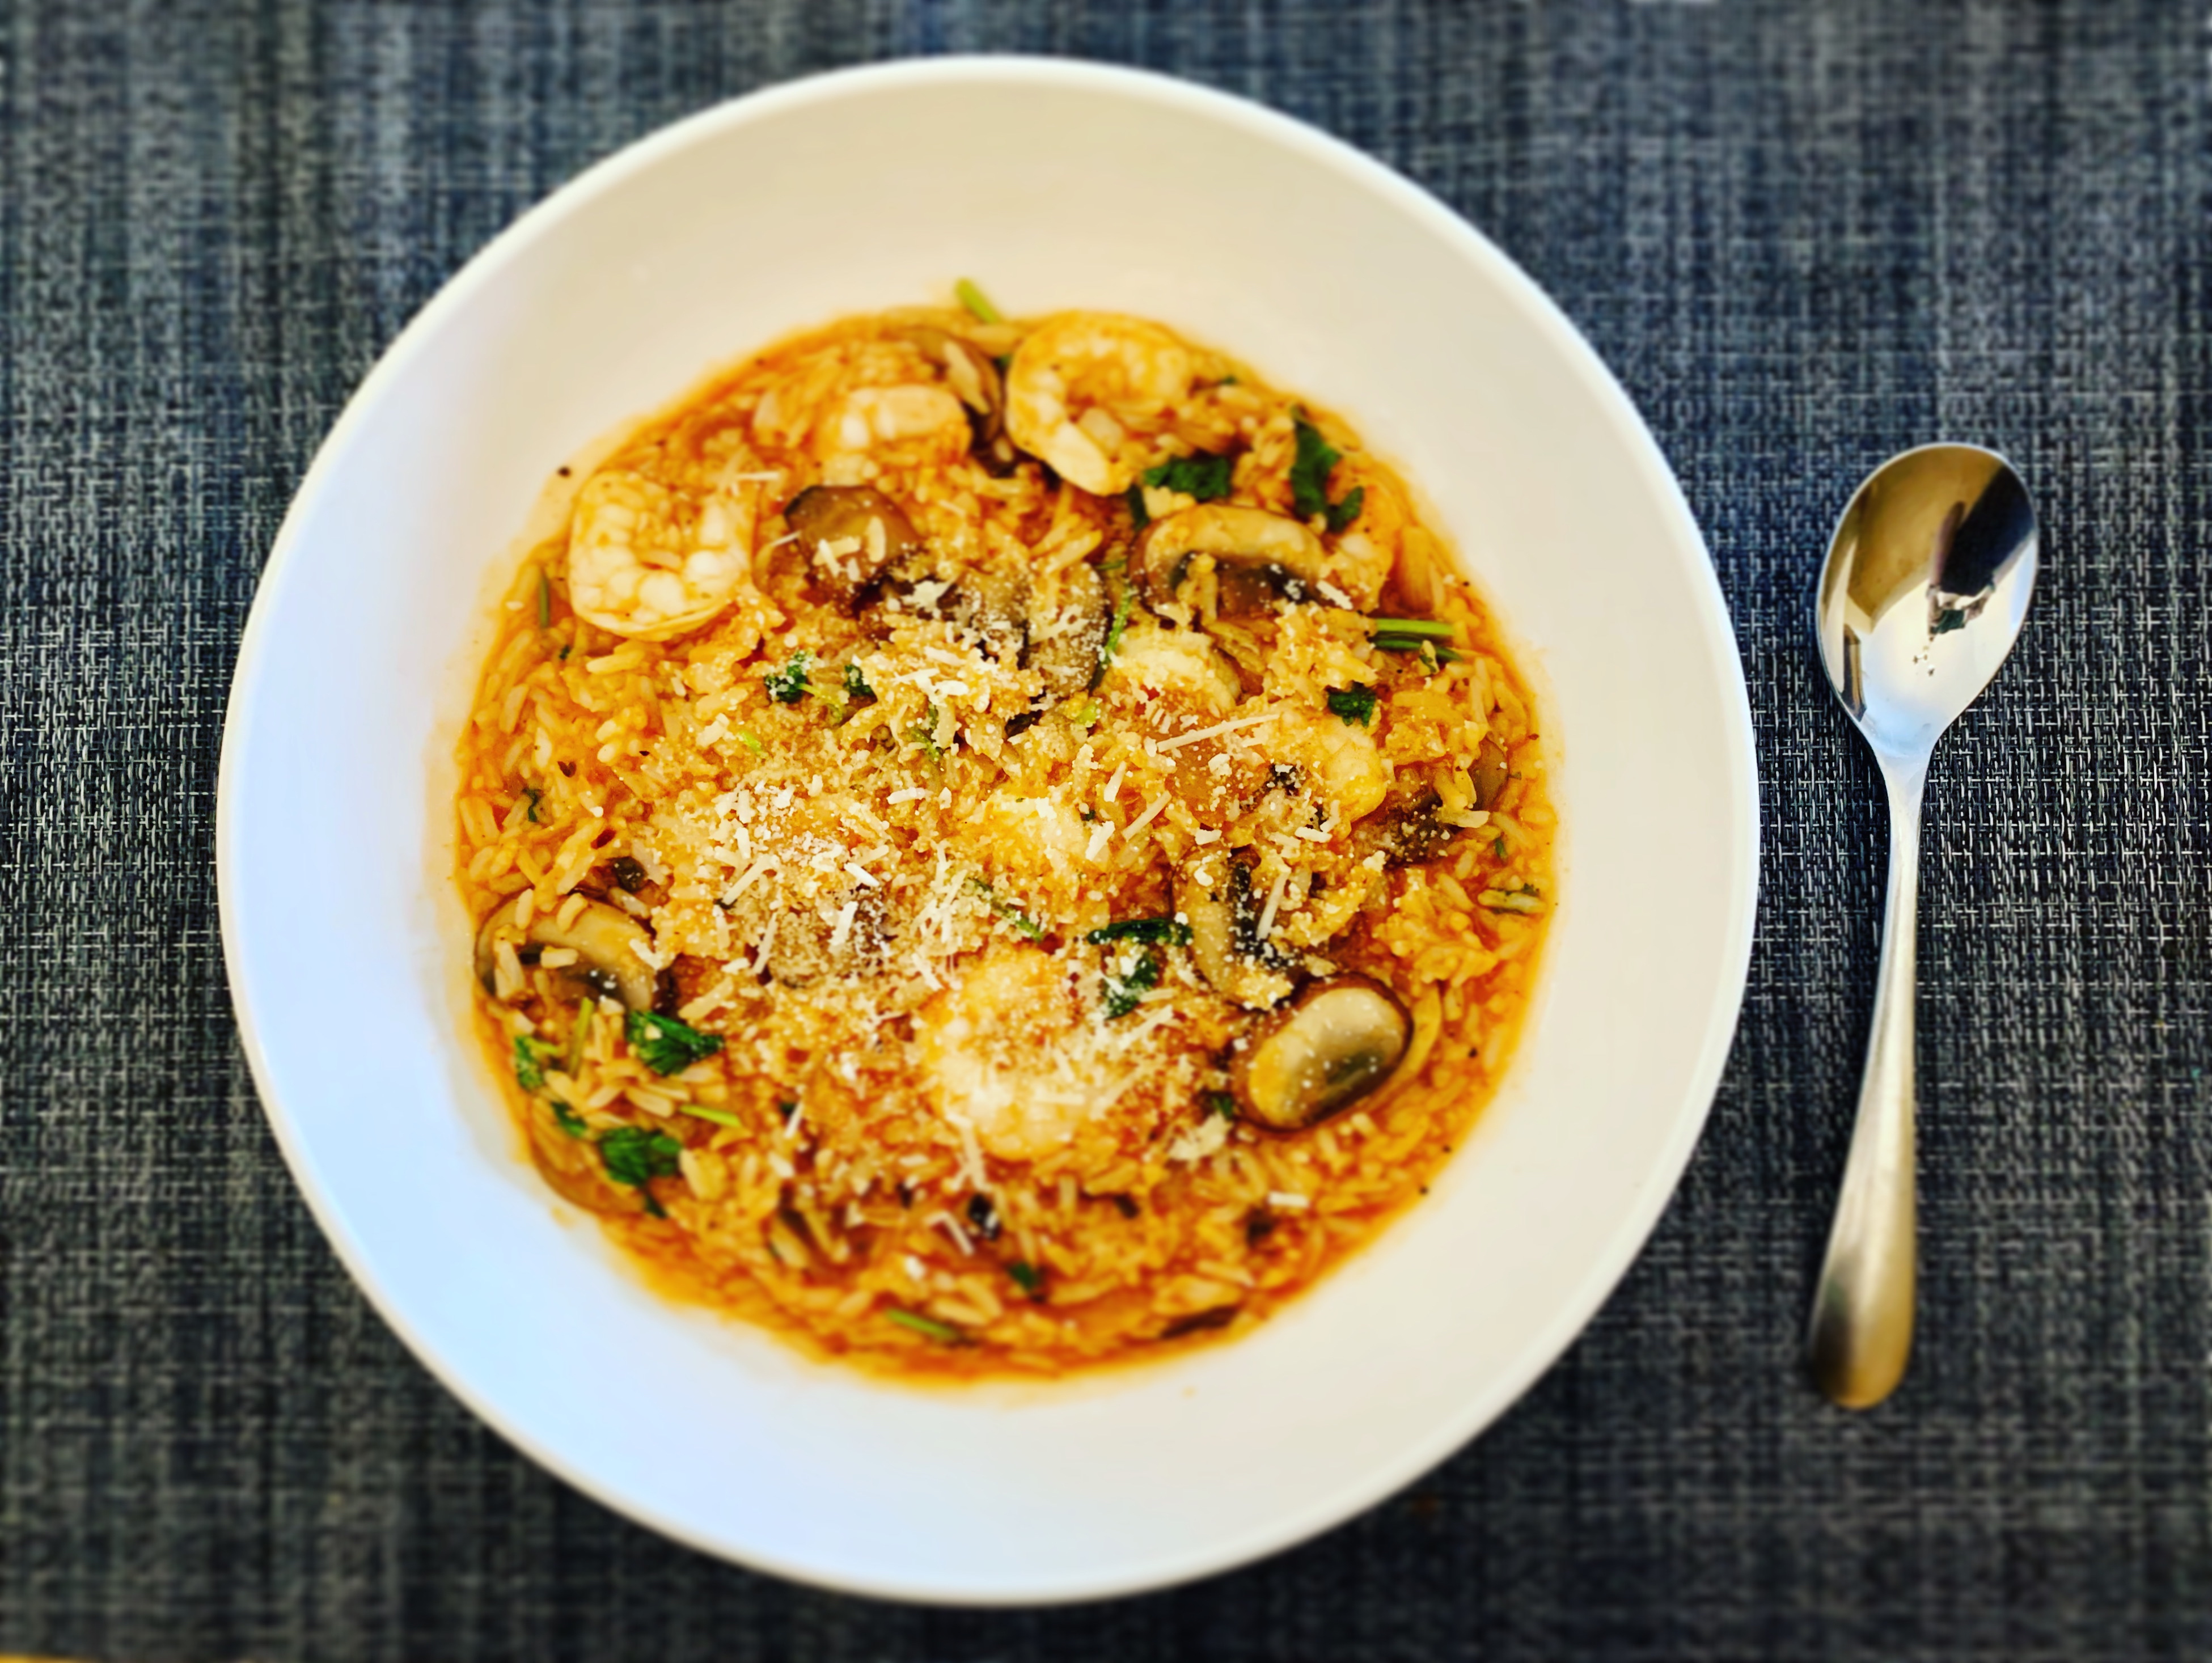 简易版risotto意大利烩饭的做法